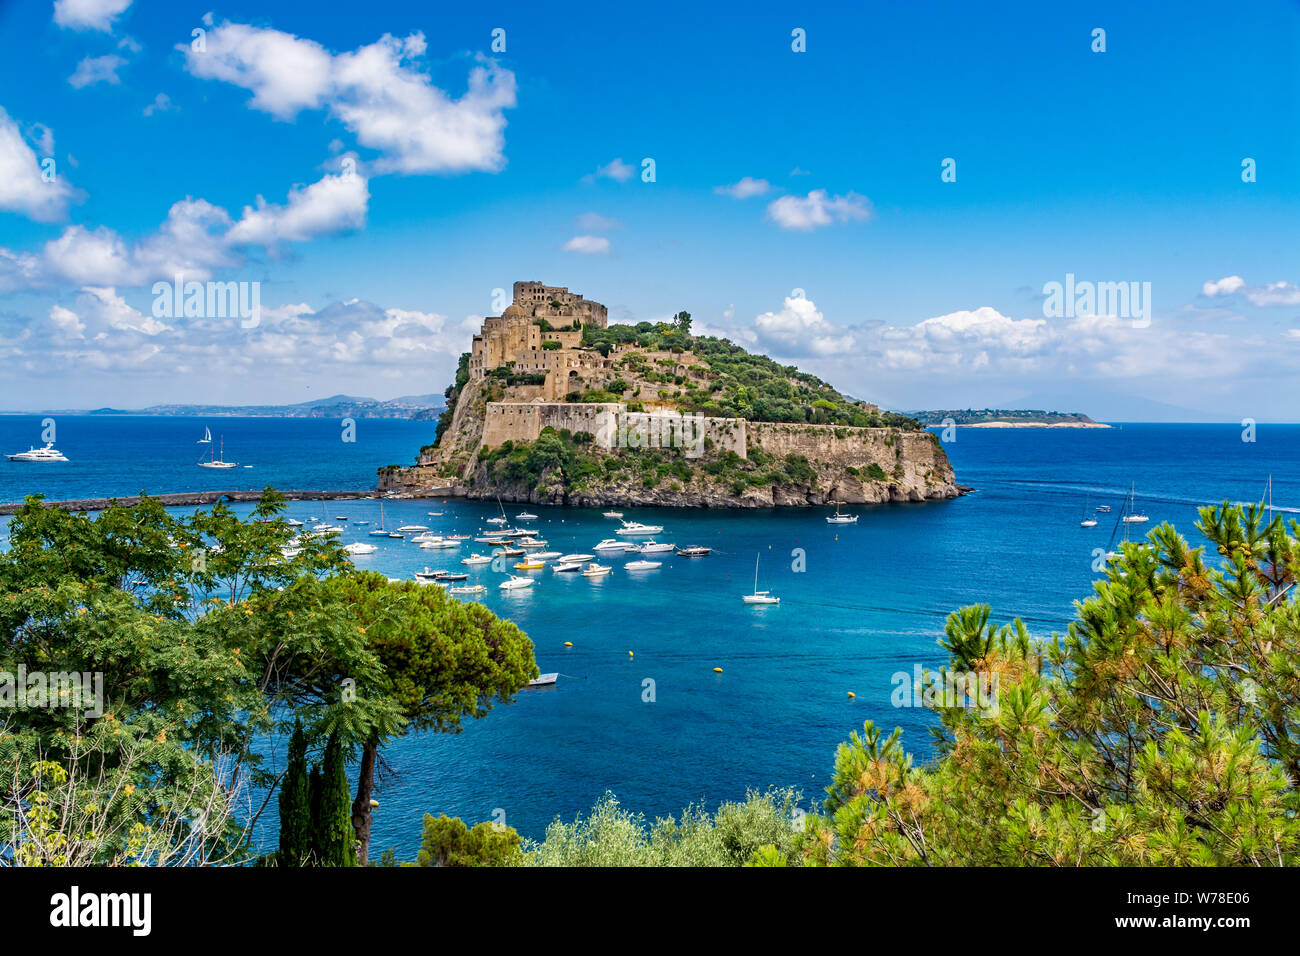 Aragonese Castle - Château Aragonais sur une belle journée d'été, l'île d'Ischia, Italie Banque D'Images